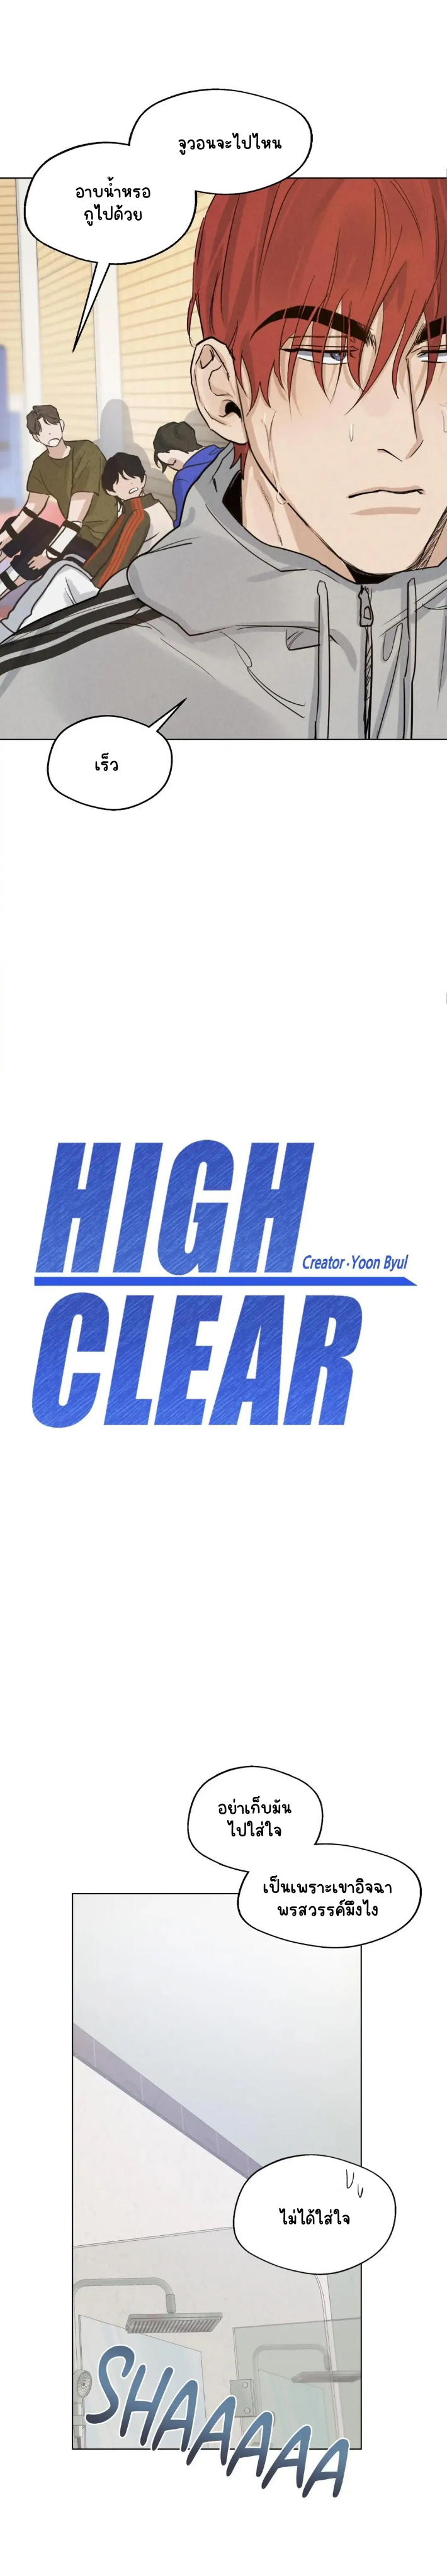 High Clear 6-6